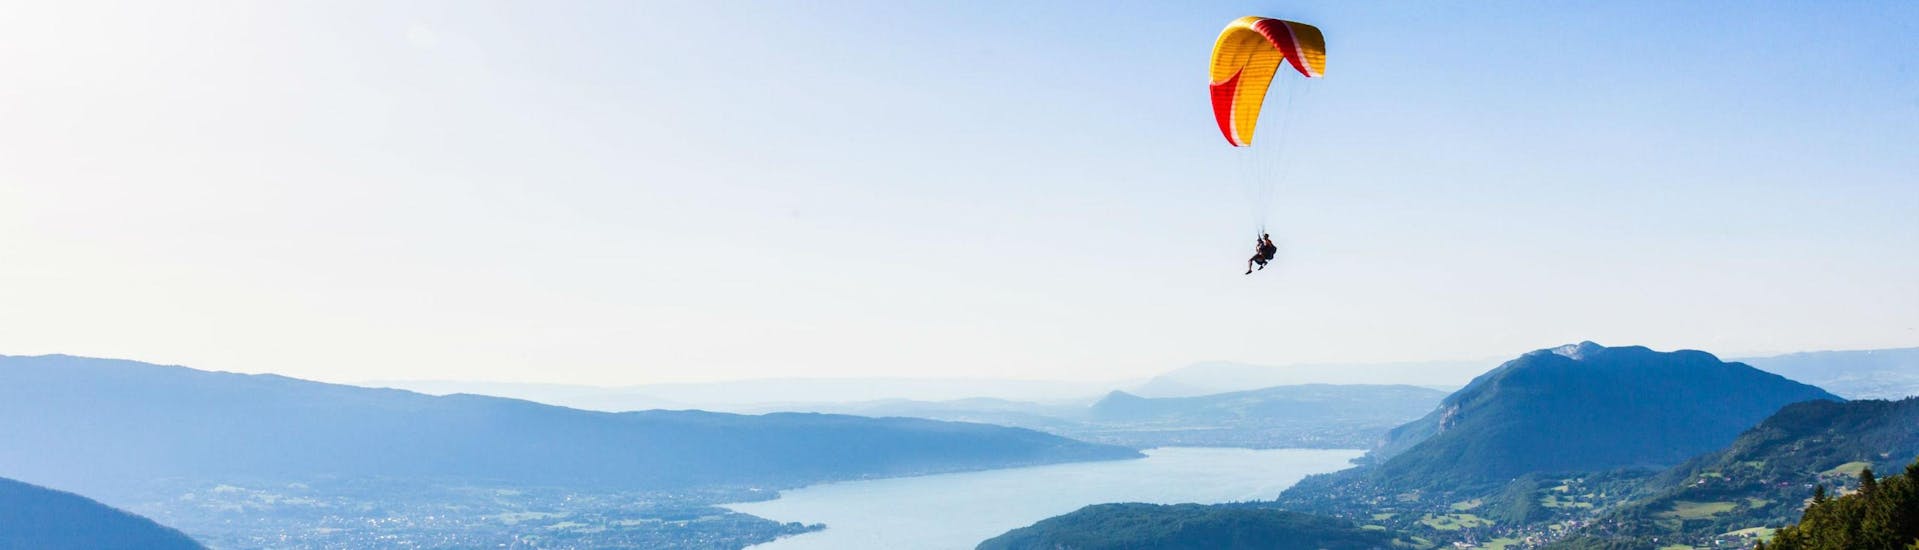 Un pilote de tandem et son passager planent doucement dans le ciel en faisant du parapente au-dessus du lac d'Annecy.